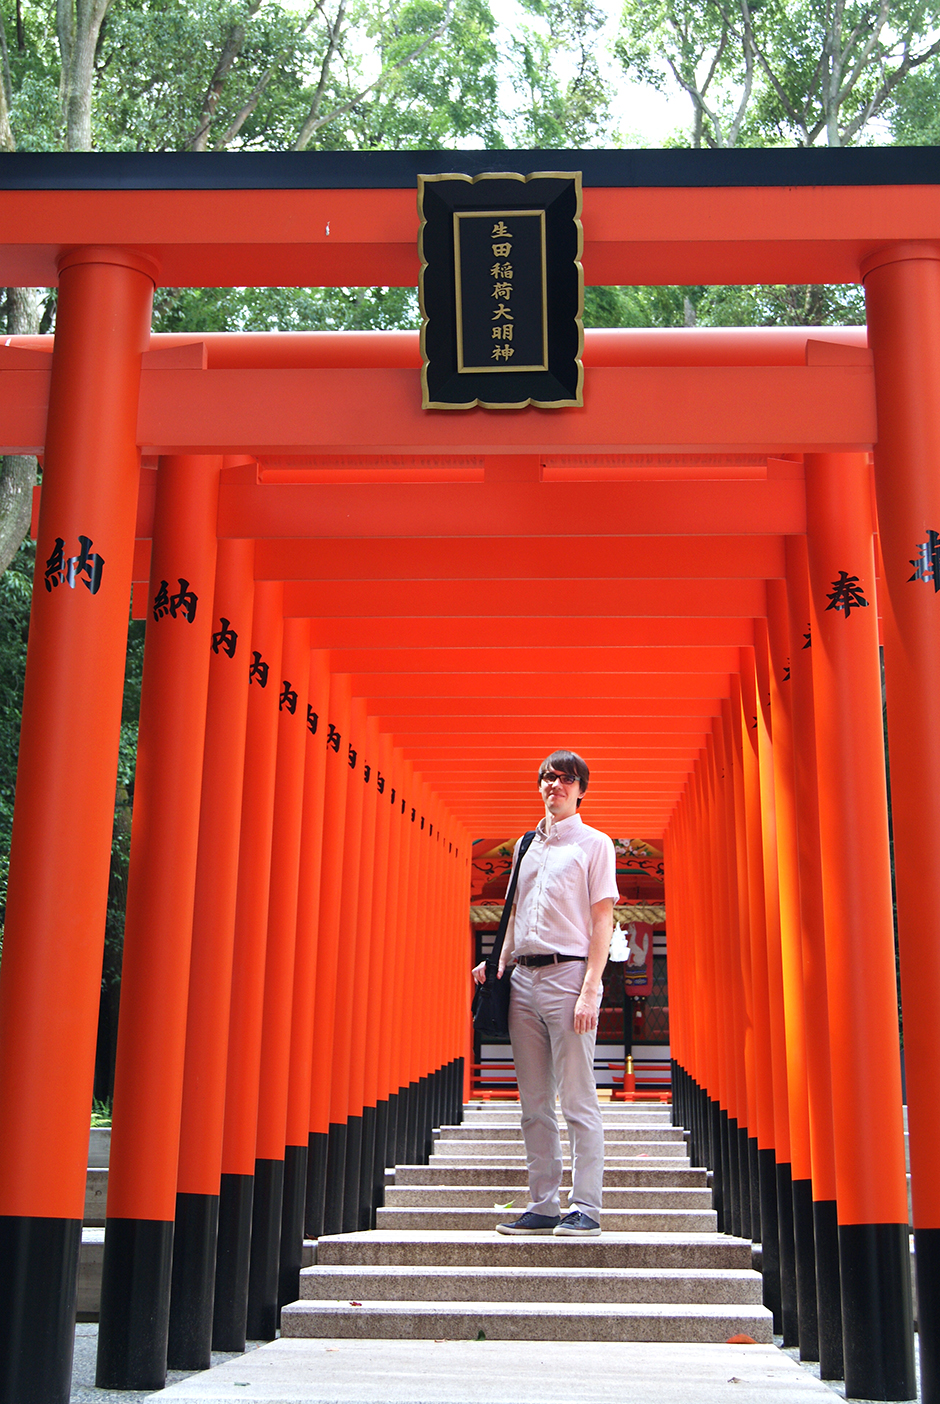 京都に行かなくても、鳥居がたくさん並んでいる写真が撮れます。